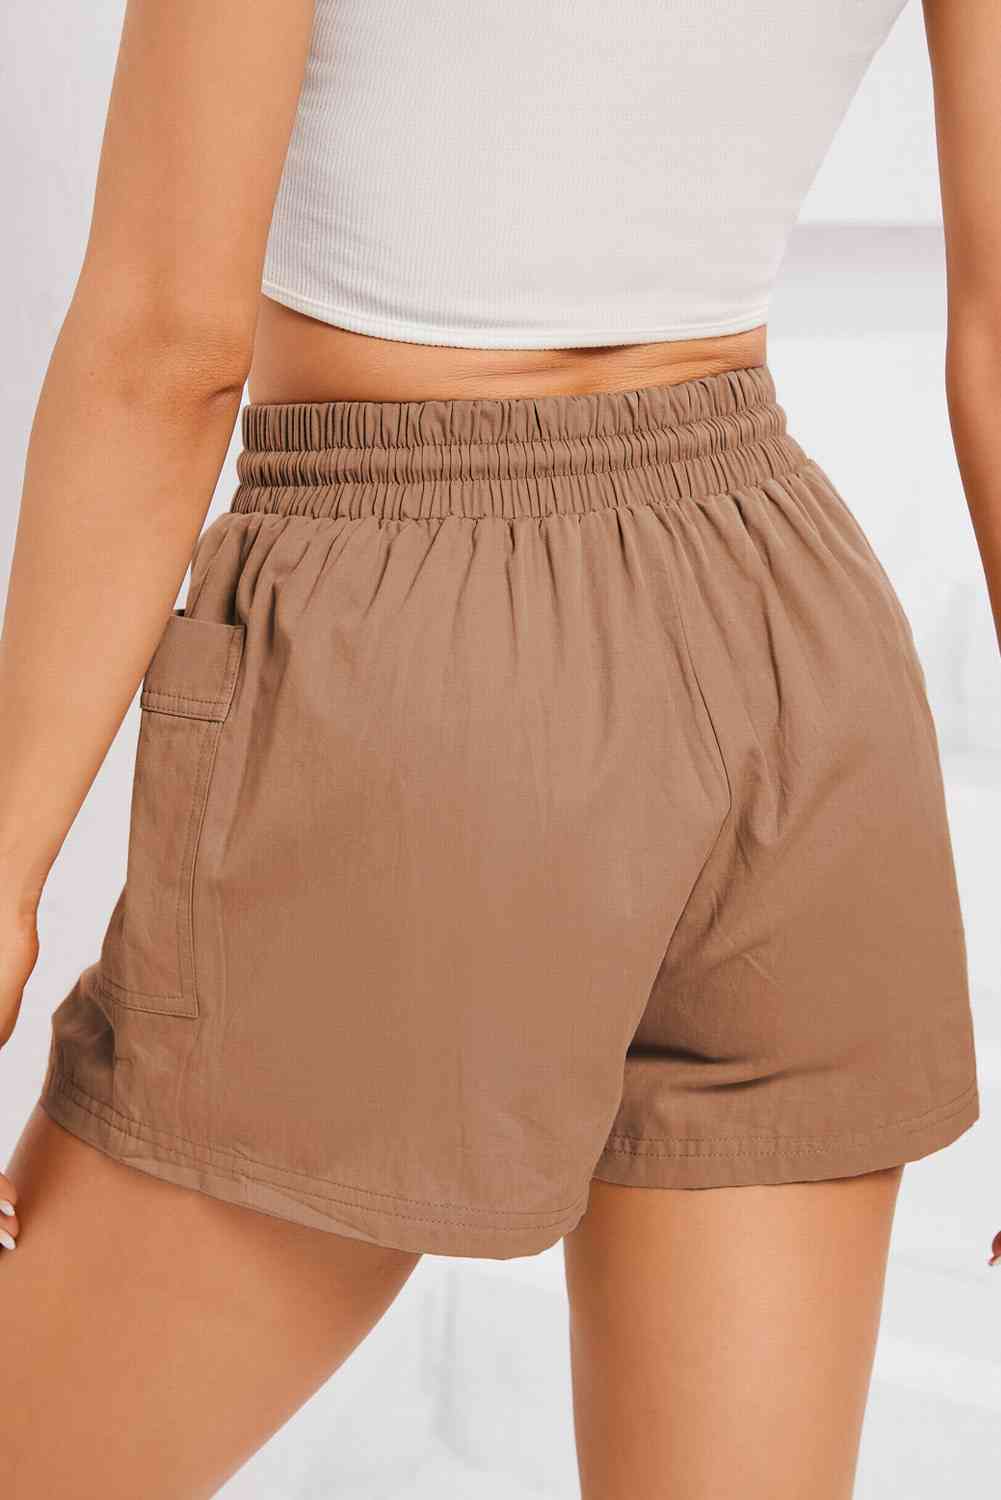 Shorts con bolsillos y cintura fruncida con cordón